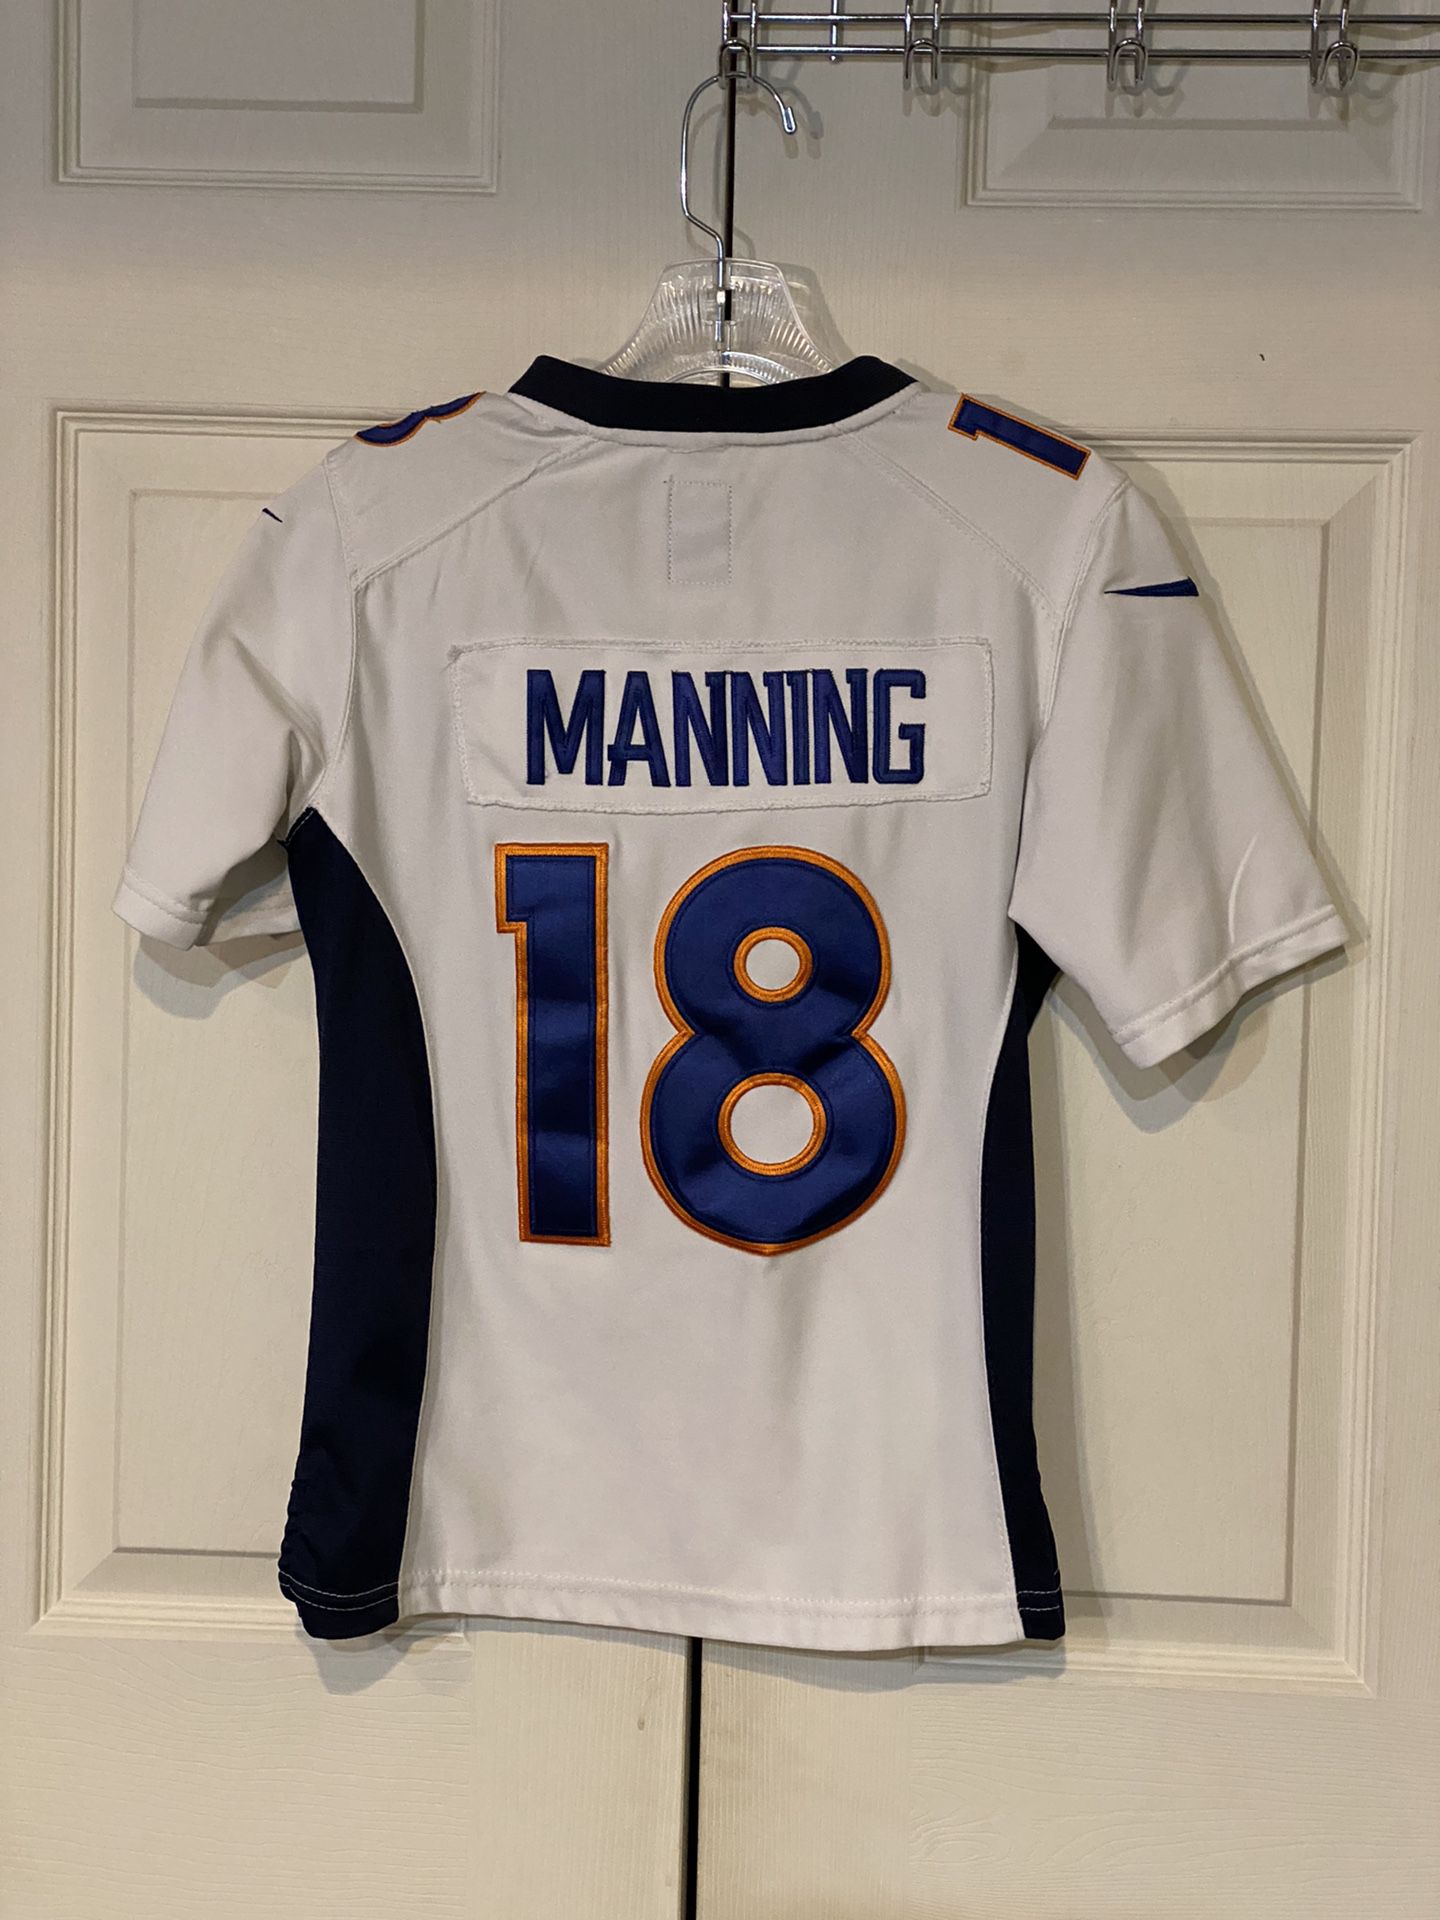 Woman’s Peyton Manning Denver Broncos Jersey 